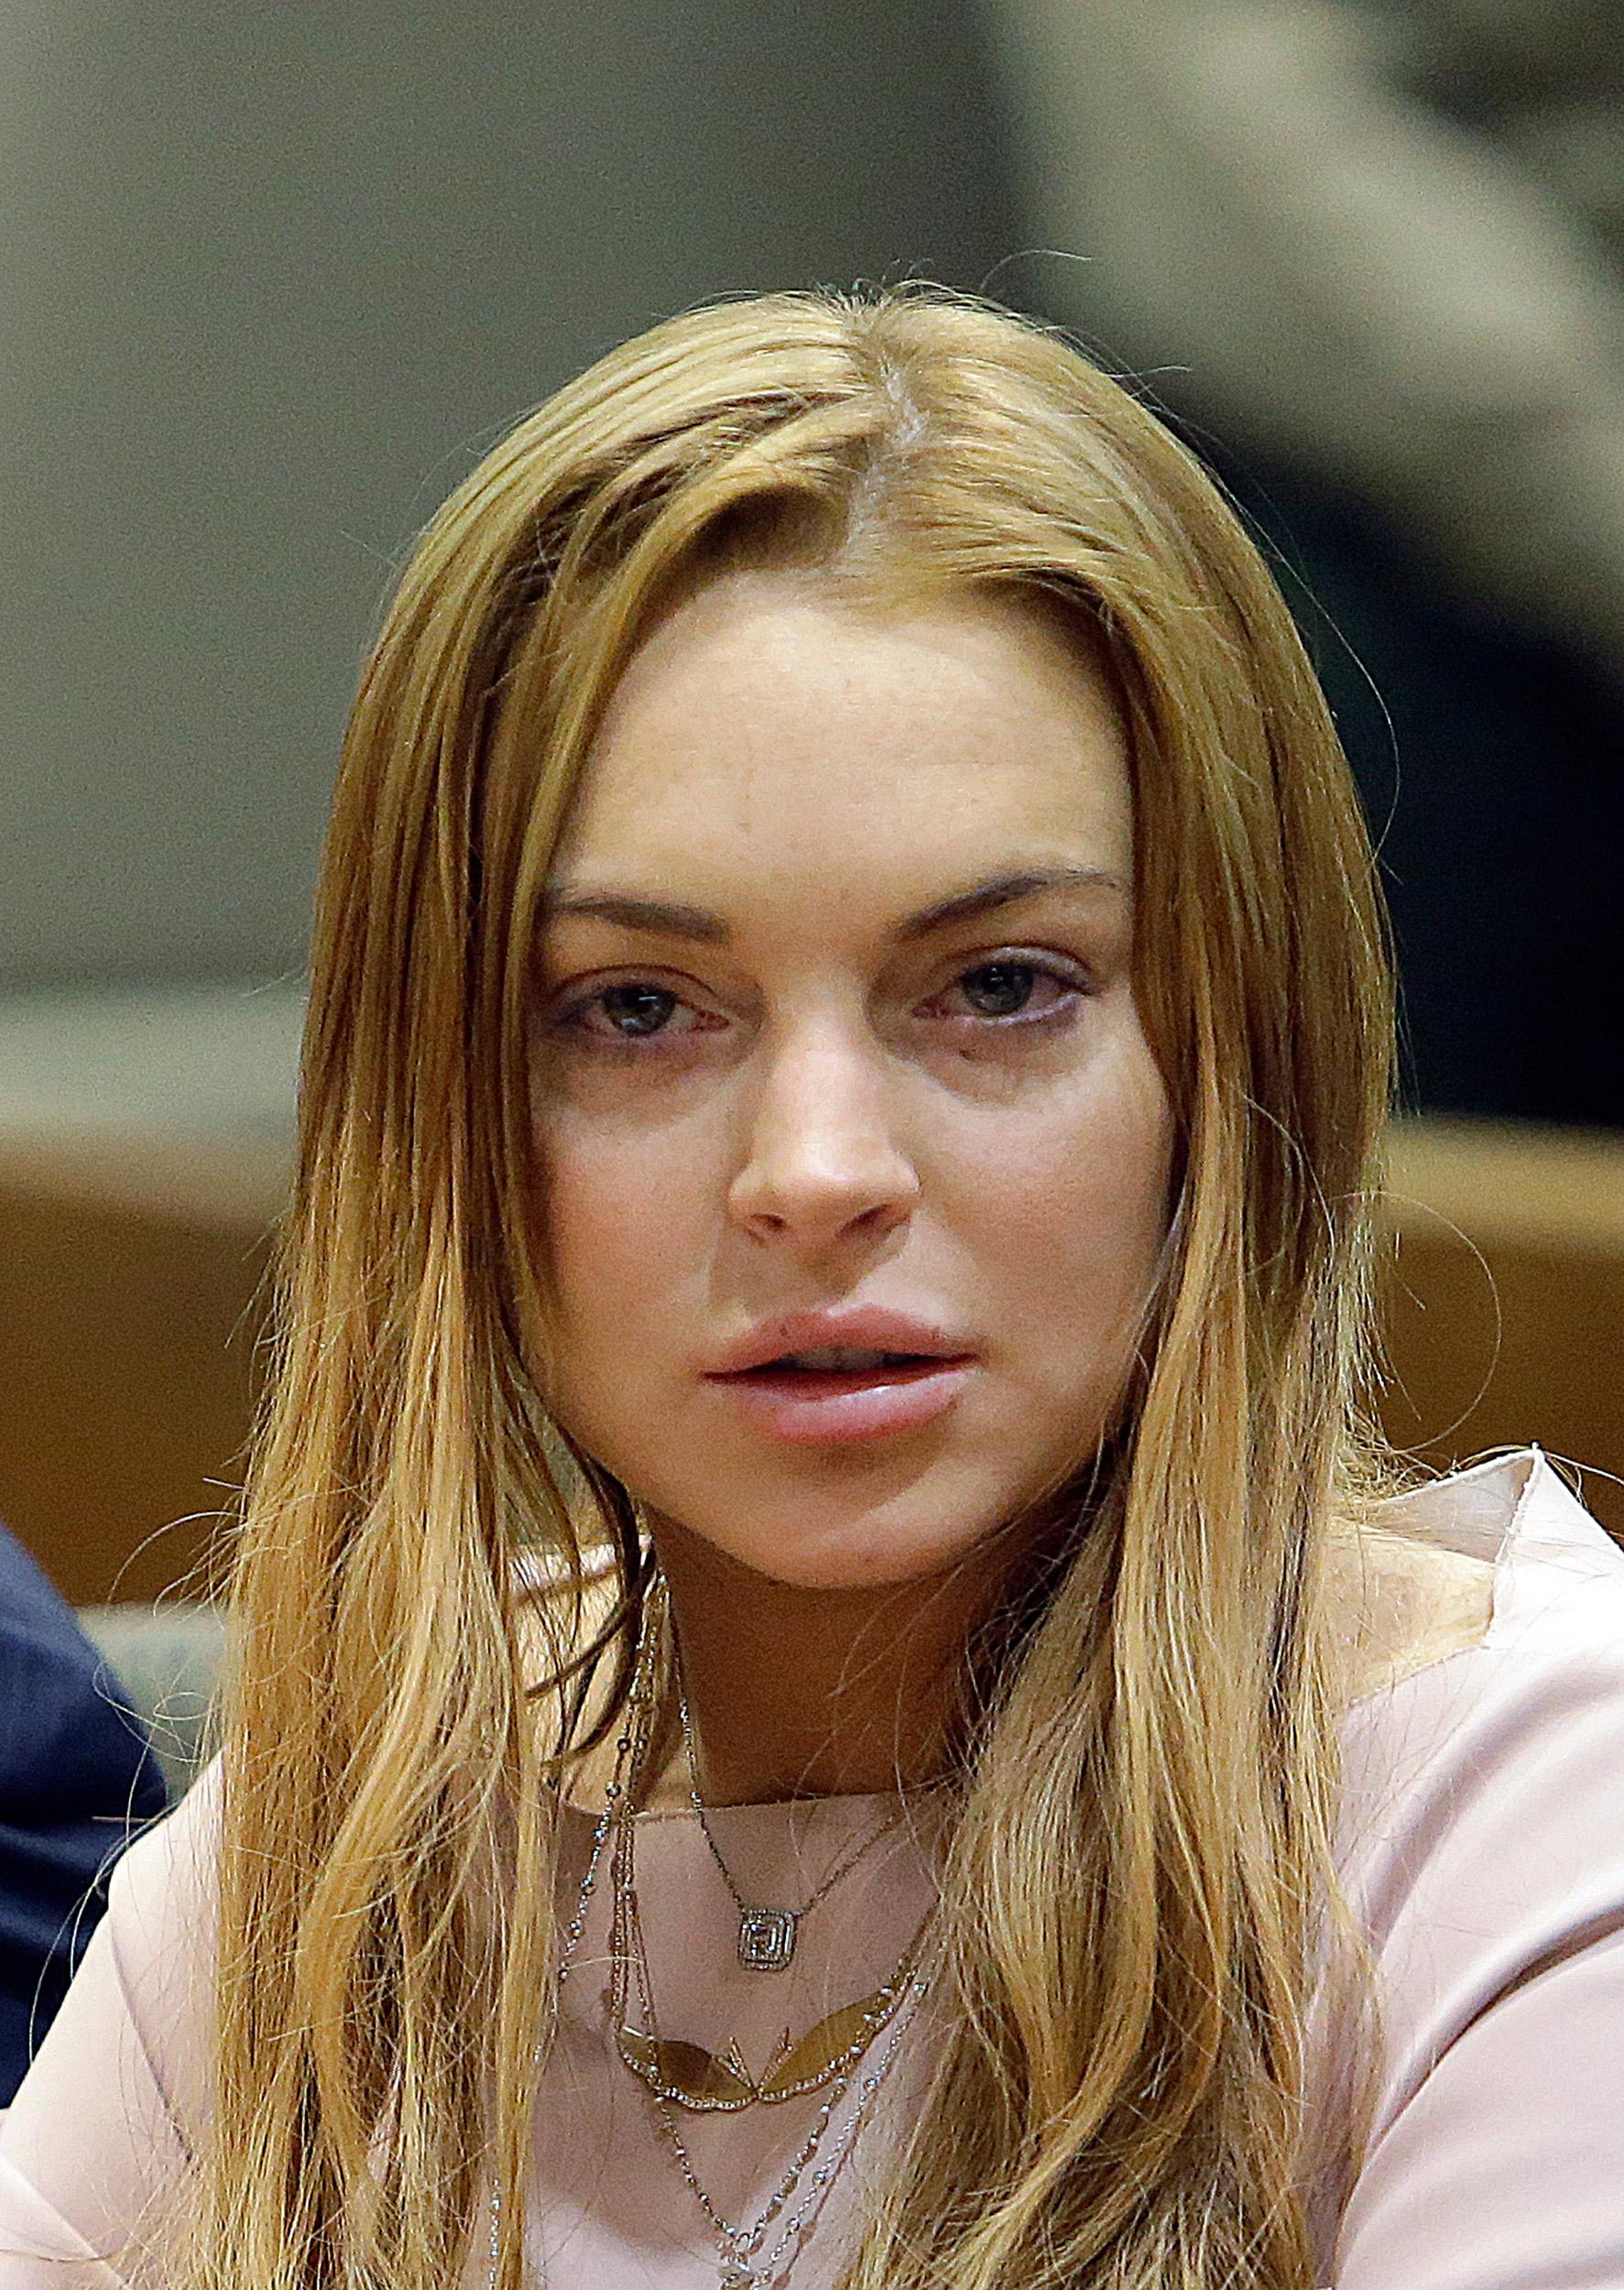 Lindsay har flera gånger hamnat i trubbel på grund av sitt beteende, här under en rättegång 2013.